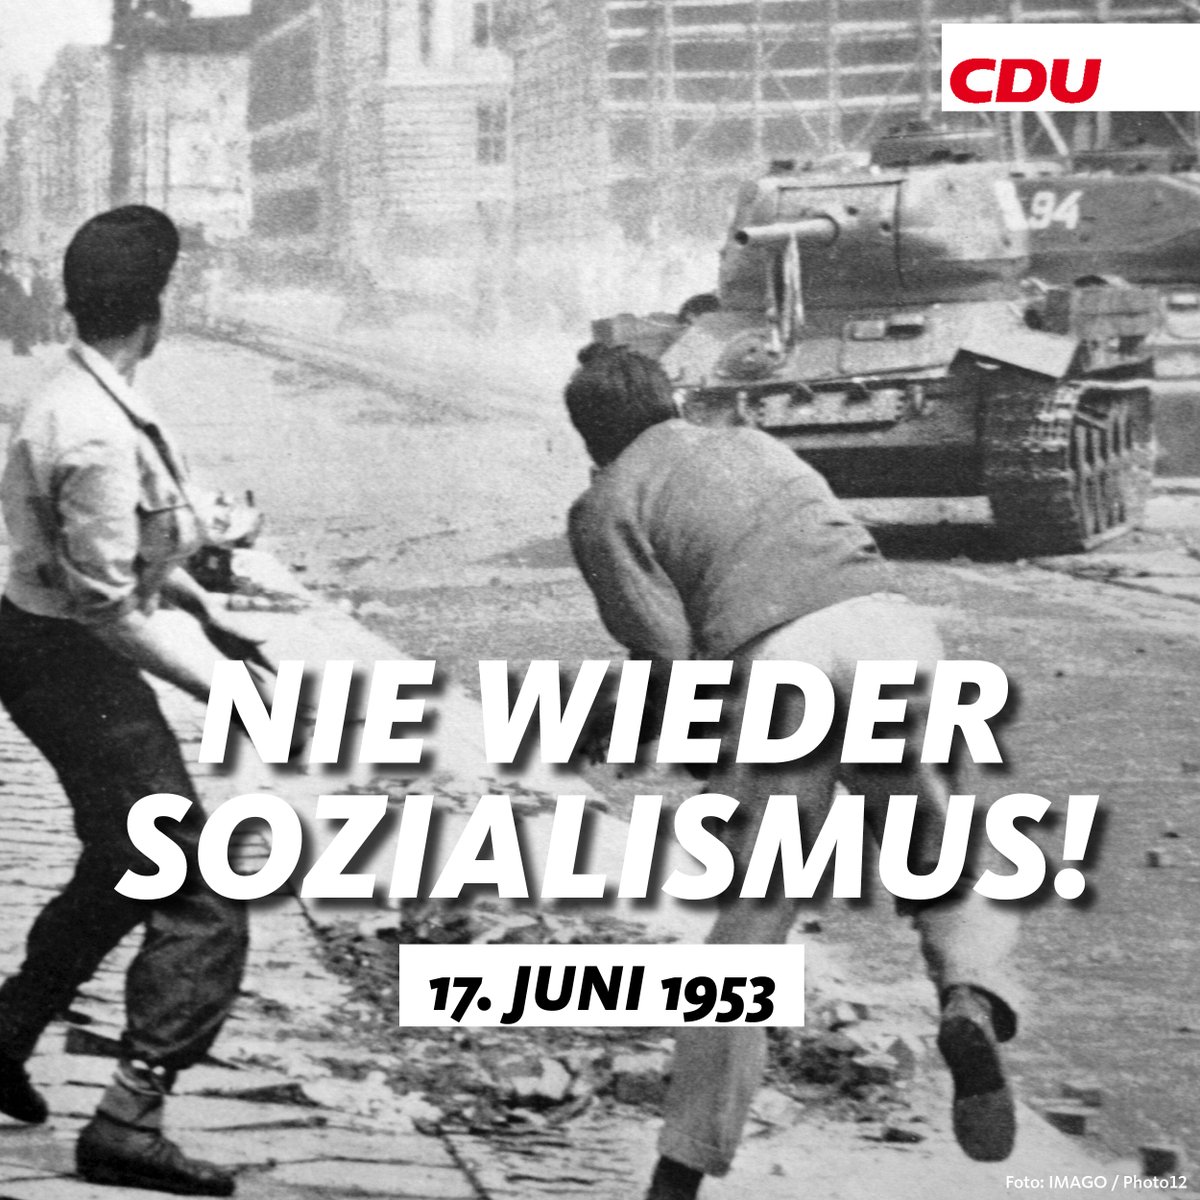 Heute gedenken wir der Opfer sozialistischer Gewaltherrschaft. Wir verneigen uns vor den mutigen Bürgerinnen und Bürgern, die sich am 17. Juni 1953 in Ost-Berlin und überall in der DDR gegen die #SED-Tyrannei erhoben haben. Für uns als #CDU ist klar: Nie wieder #Sozialismus!